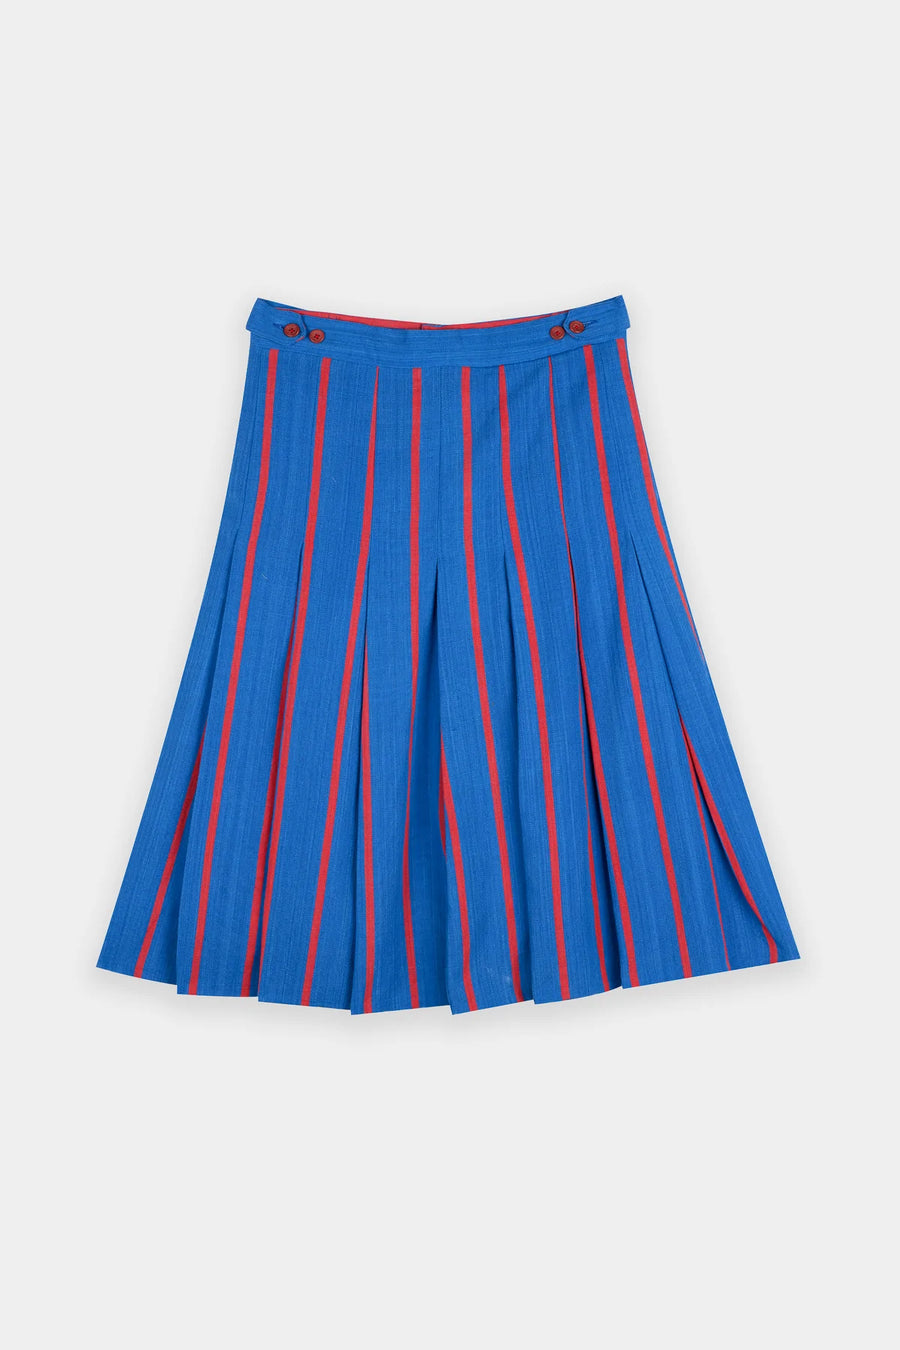 Izzy I High Waist Unisex Skirt - Blue/Red